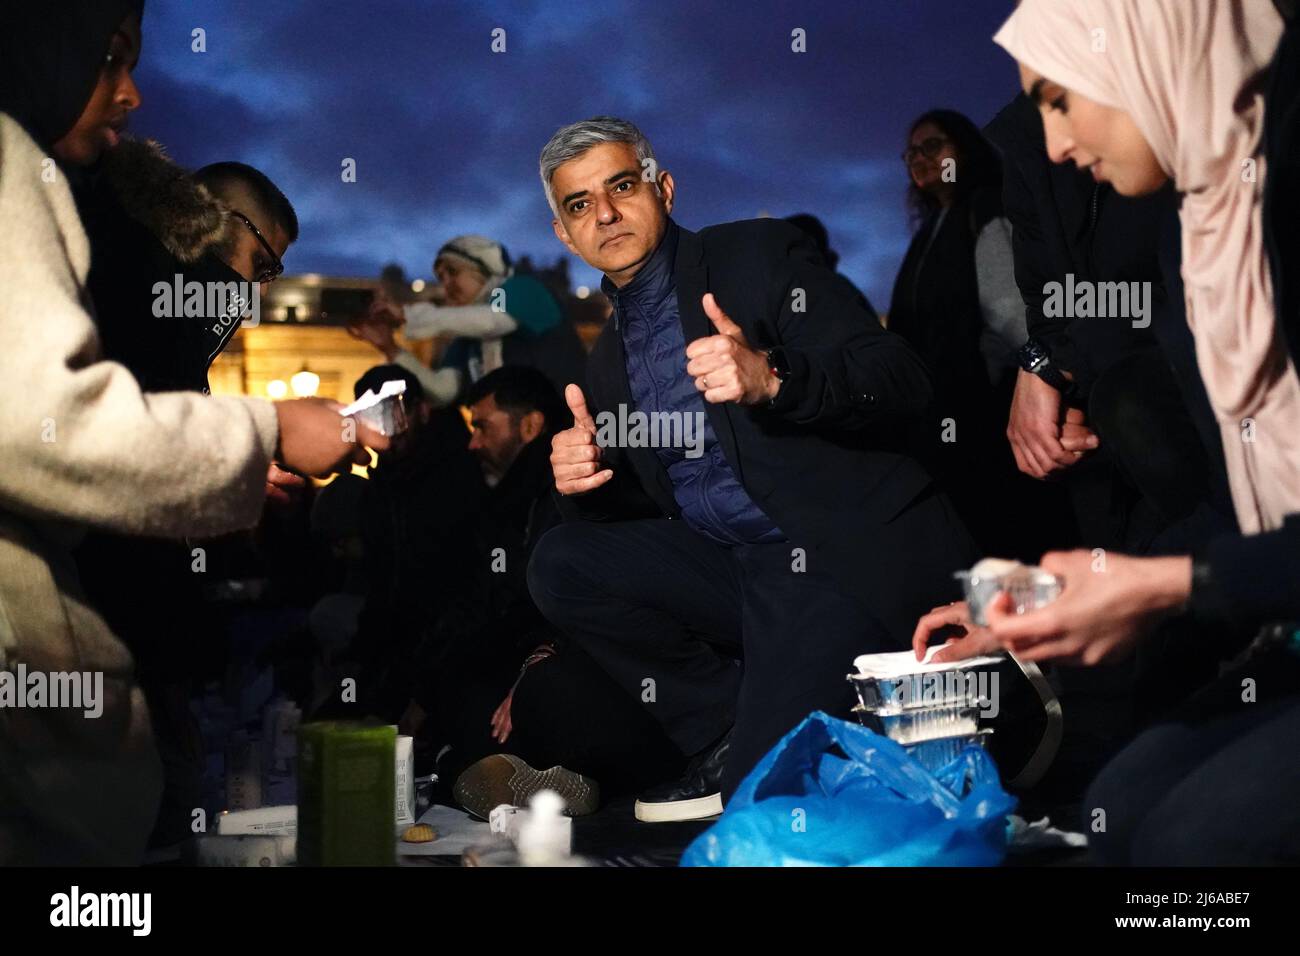 Maire de Londres Sadiq Khan (au centre) lors d'un Iftar ouvert pour marquer la dernière semaine du Ramadan, organisé par le projet de tente du Ramadan, pour rassembler des personnes de toutes les communautés pour partager un Iftar (repas du soir) pour se rompre rapidement pendant le mois Saint islamique du Ramadan, à Trafalgar Square, Dans le centre de Londres. Date de la photo: Vendredi 29 avril 2022. Banque D'Images